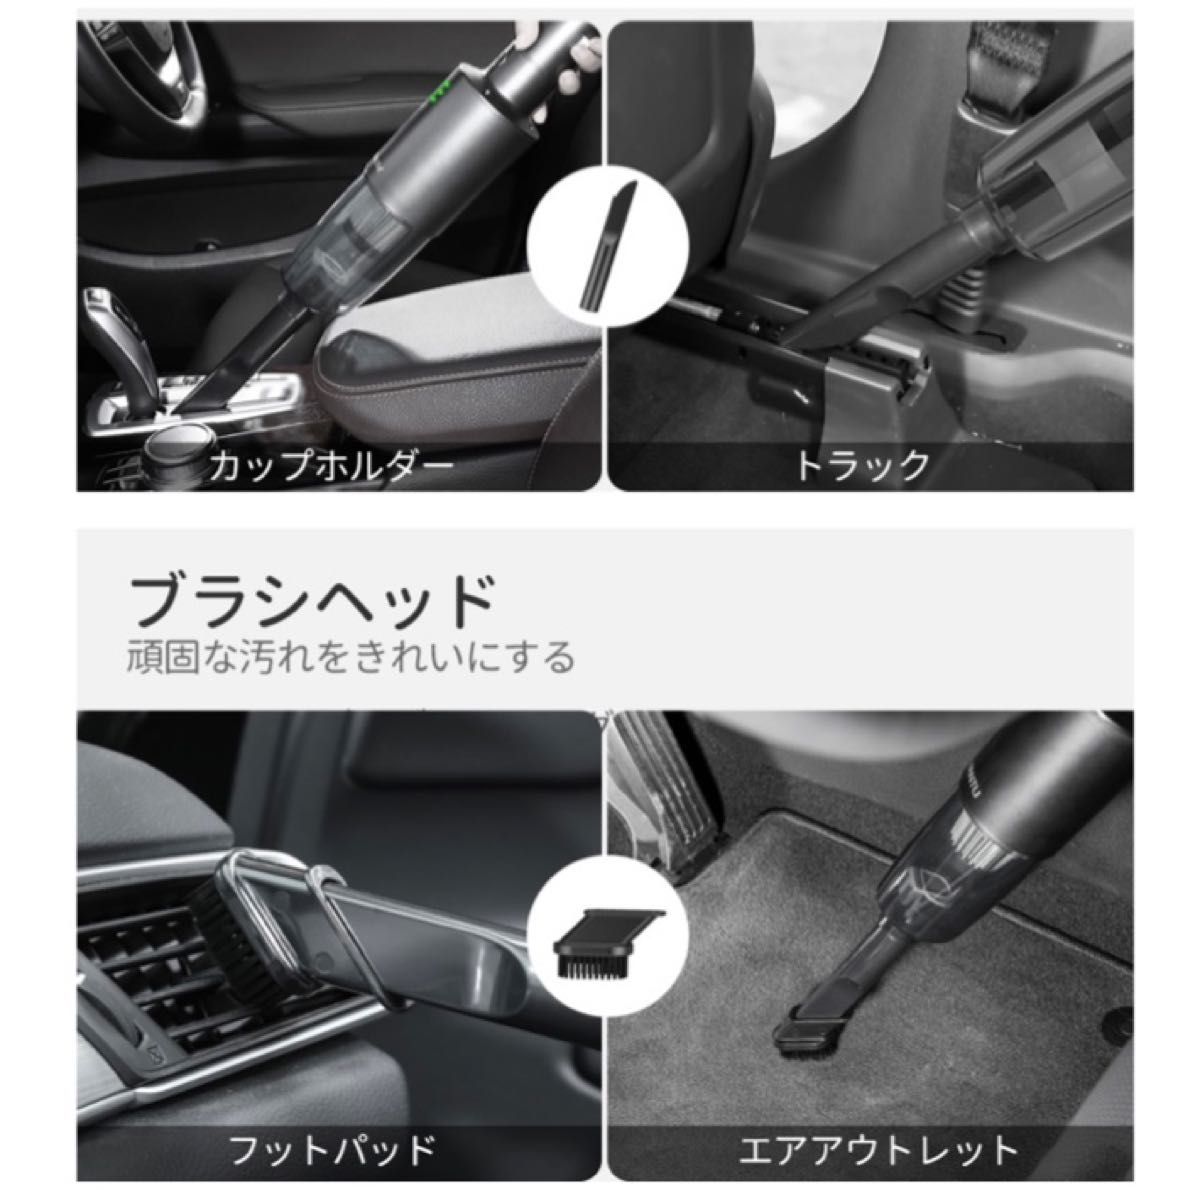 ハンディクリーナー 車用 シガーソケット接続 掃除機 小型 家庭用 ブラック 強力吸引 ノズル付 コンパクト 軽量 USB充電